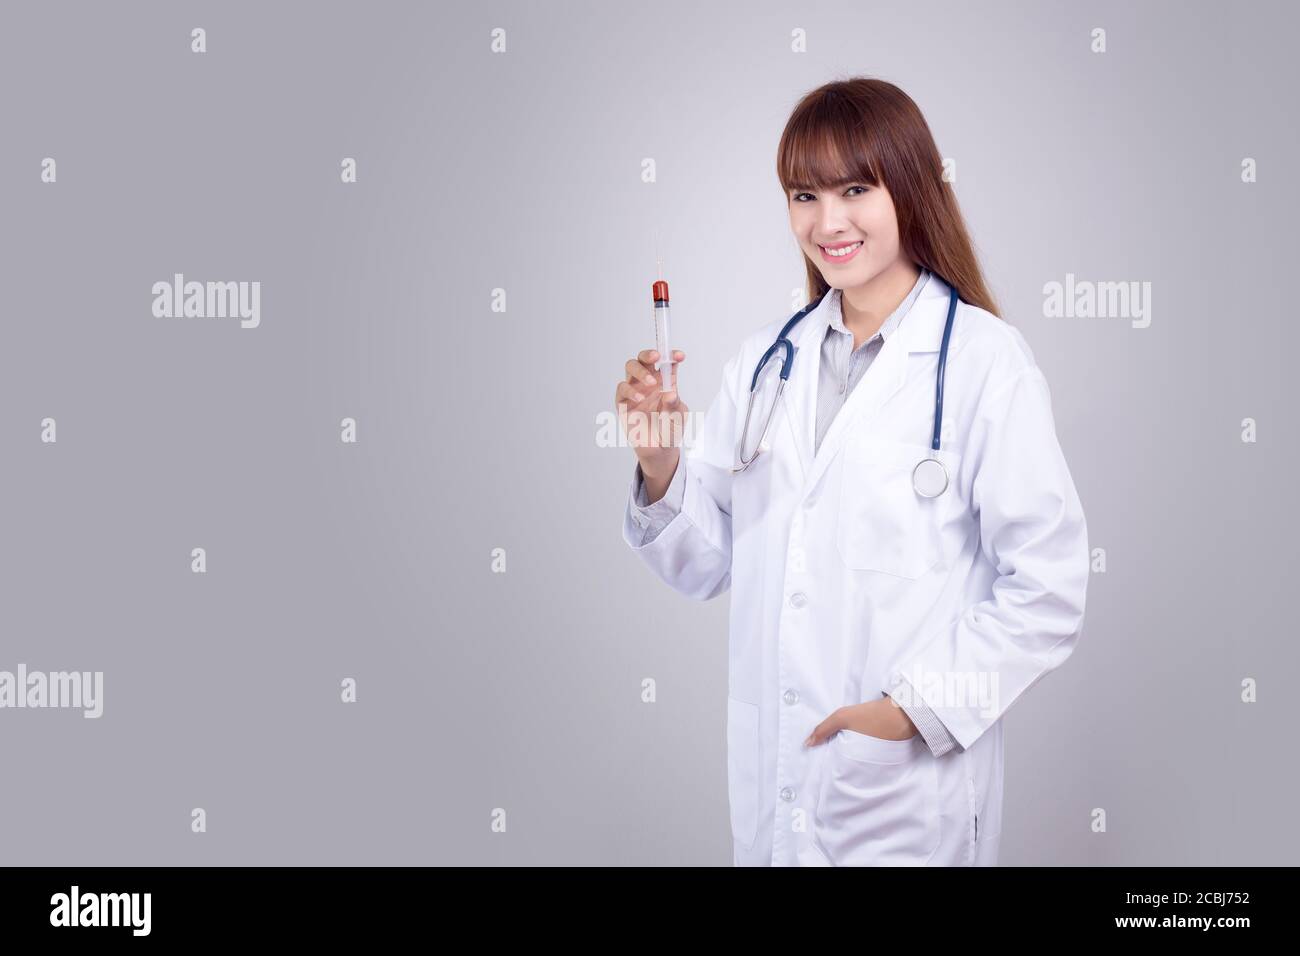 Concetto sano : giovane medico asiatico con siringa ipodermica in mano isolato su sfondo grigio. Medico , clinica , poster ospedaliero e pubblicità Foto Stock